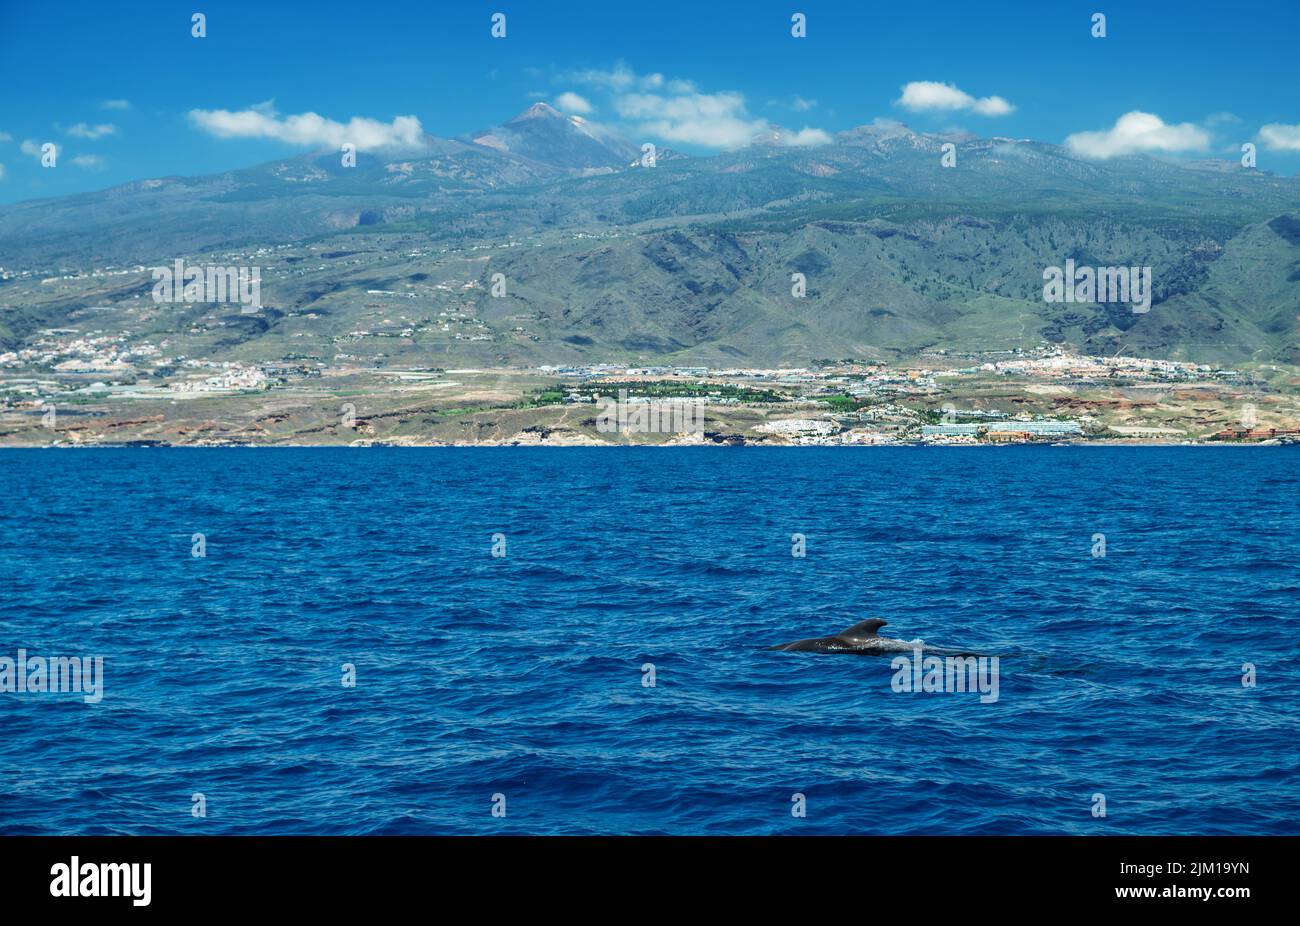 Vue sur l'île de Ténérife depuis l'océan. Les baleines pilotes dans l'eau sont au premier plan. Banque D'Images